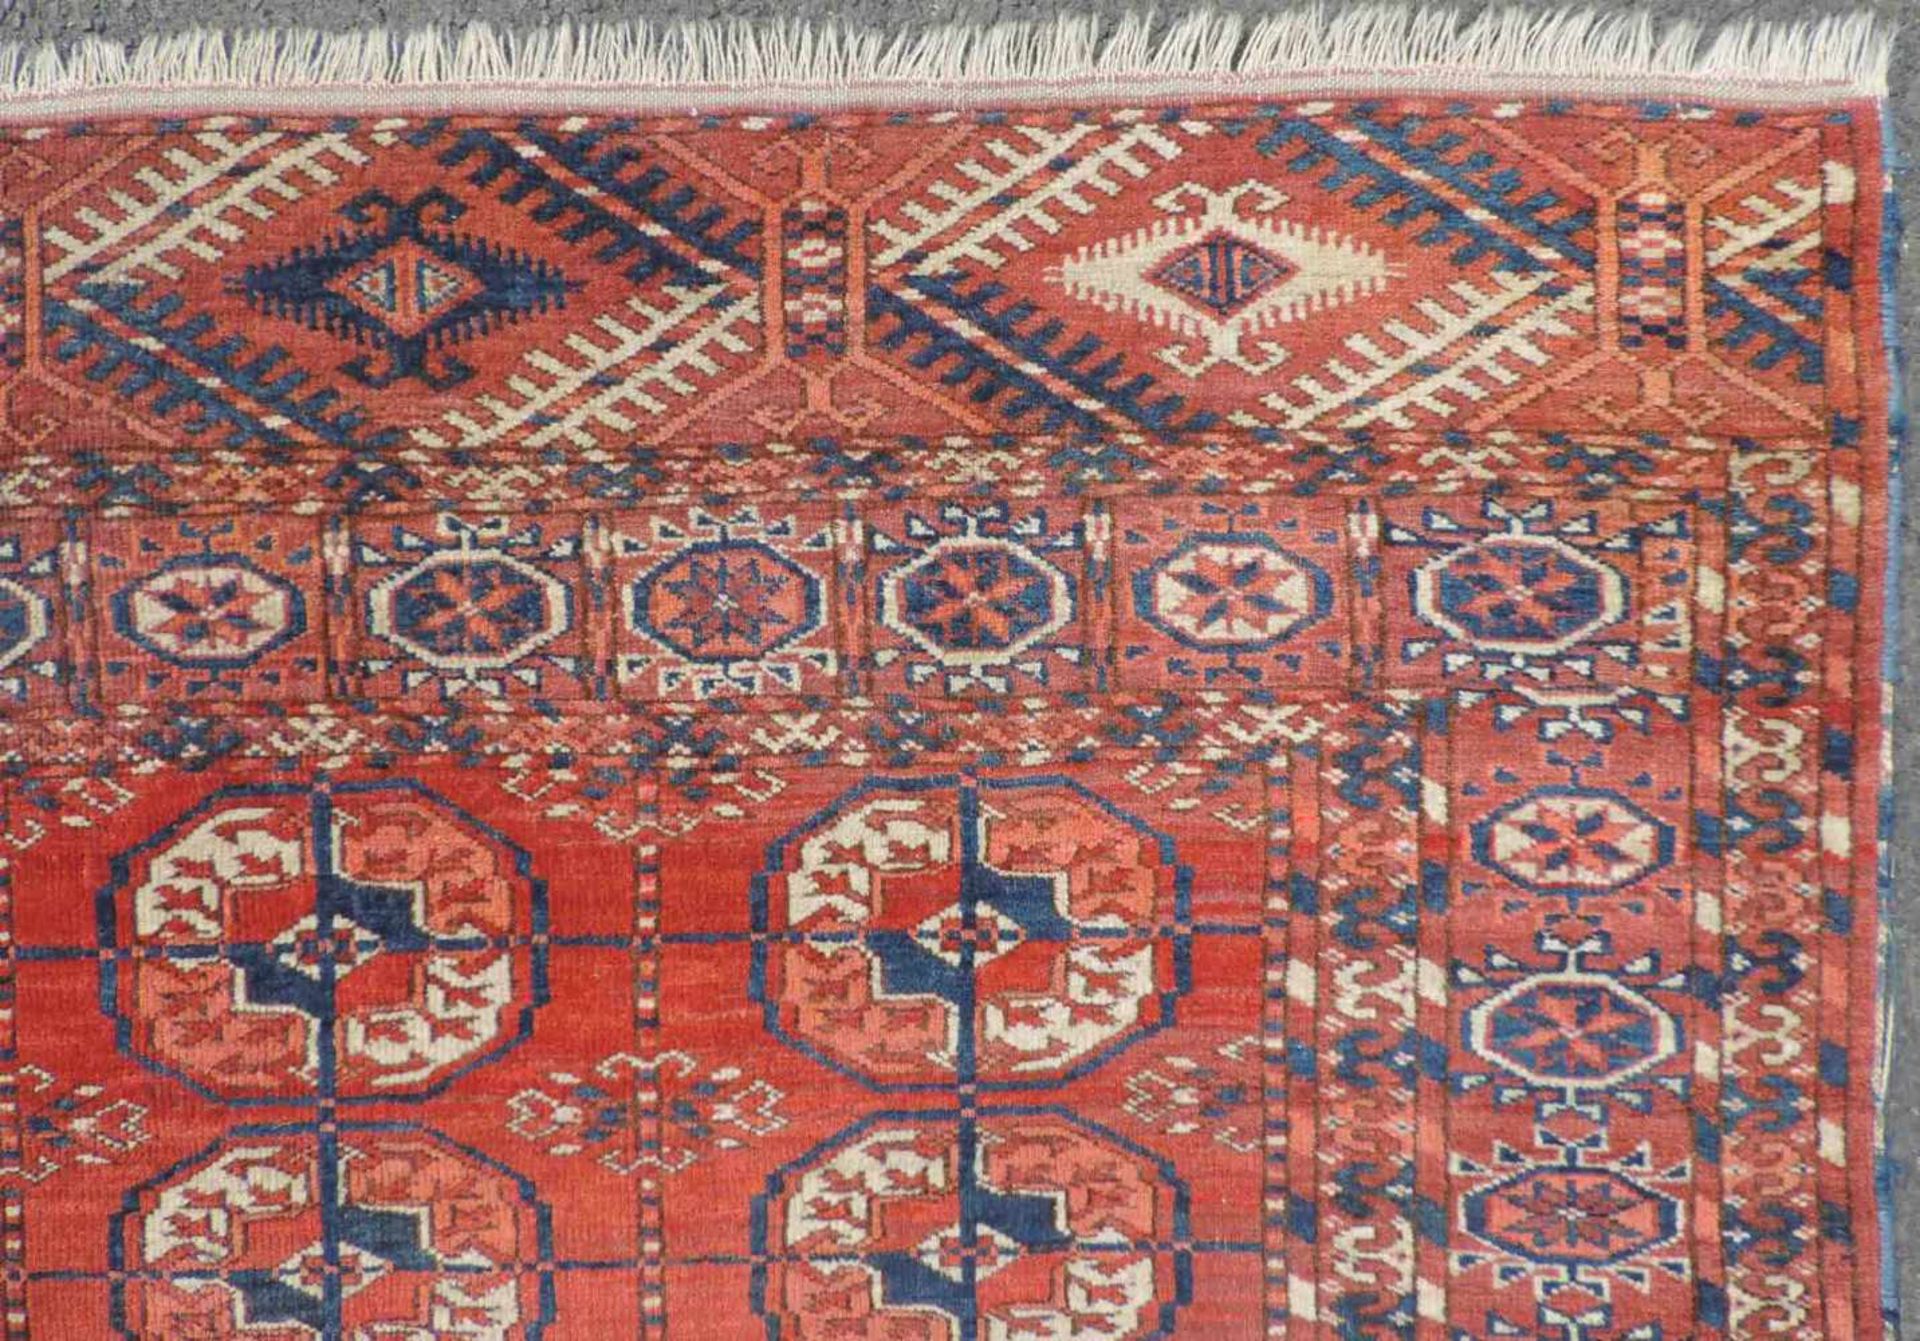 Tekke Hauptteppich. Stammesteppich. Turkmenistan, antik, um 1900. 184 cm x 154 cm. Handgeknüpft. - Bild 7 aus 9